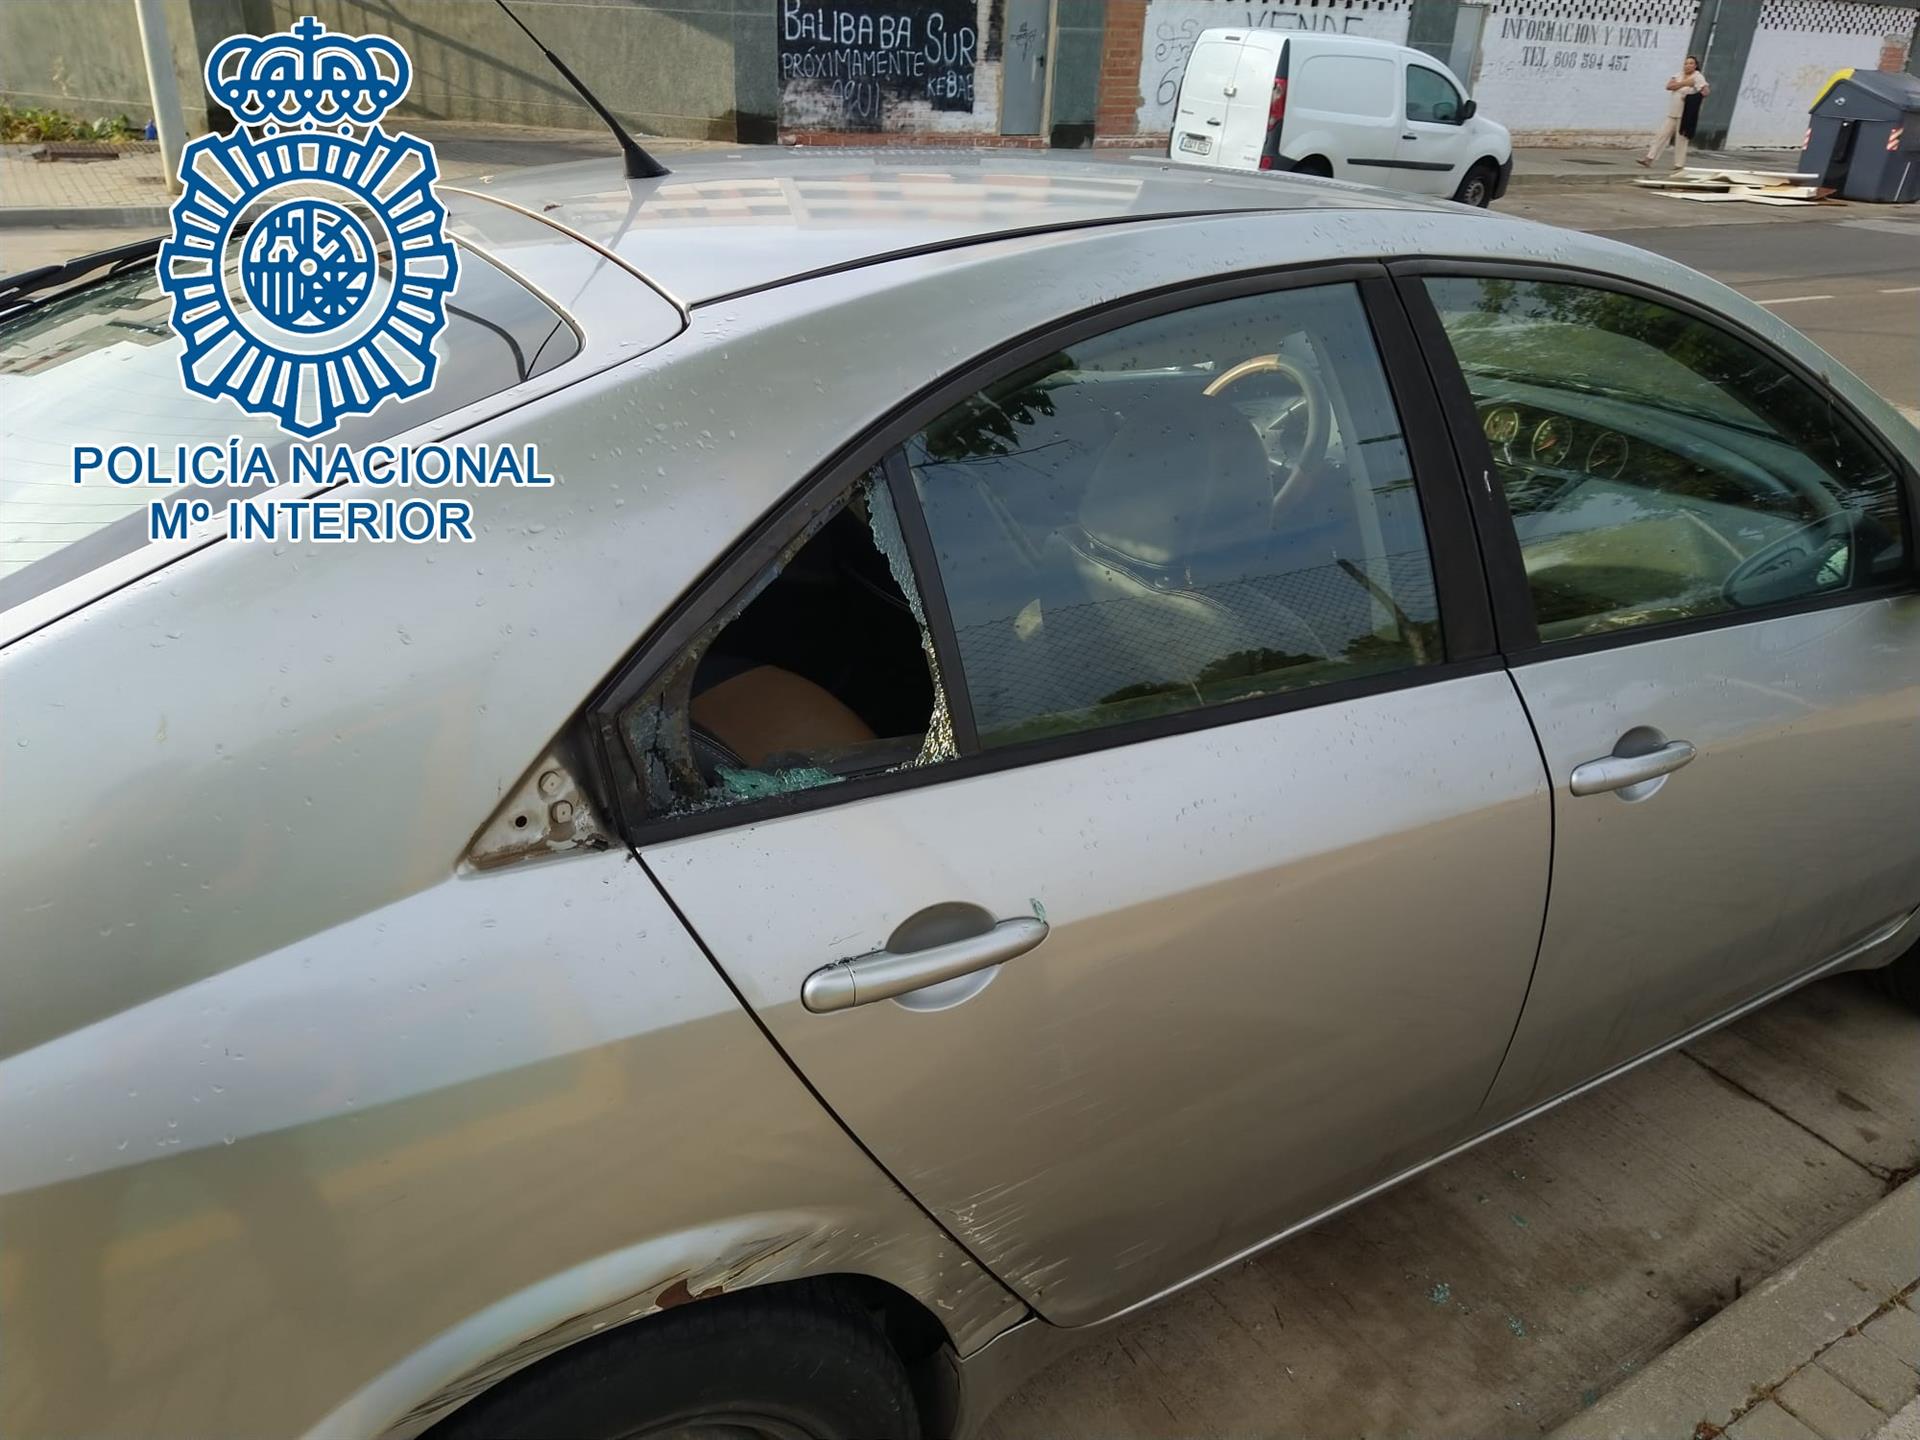 Detienen a tres hombres por el robo en varios vehículos aparcados en la calle en la zona sur de Jerez . POLICÍA NACIONAL